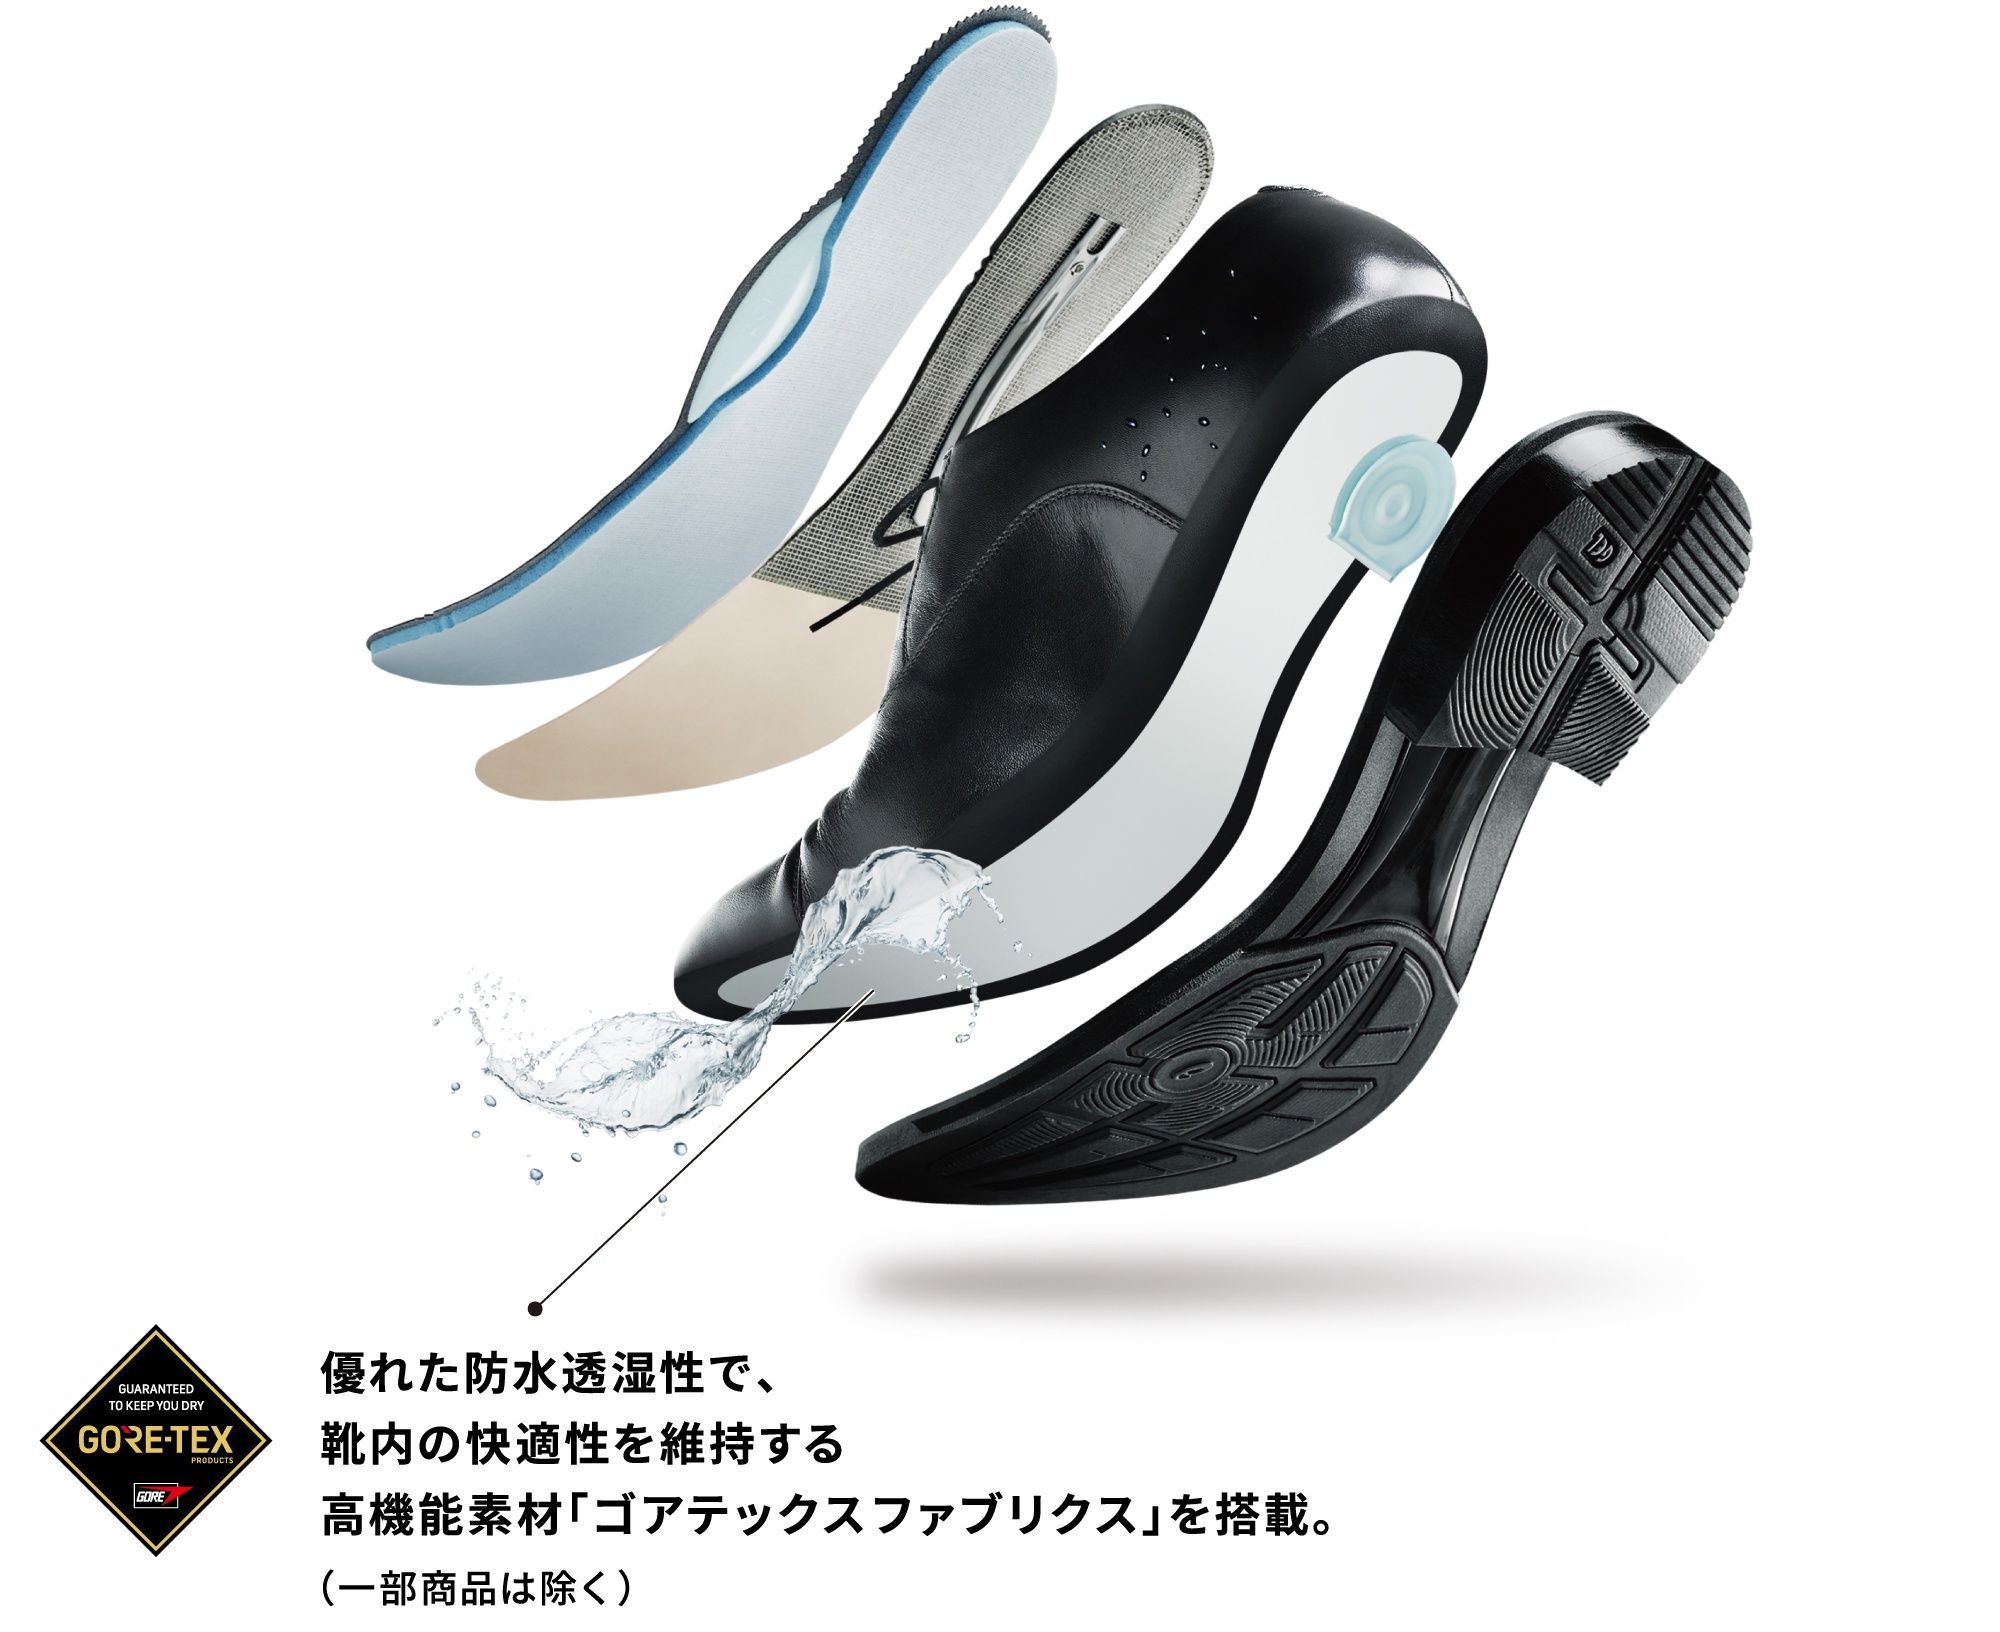 優れた防水透湿性で、靴内の快適性を維持する高機能素材「ゴアテックスファブリクス」を搭載。